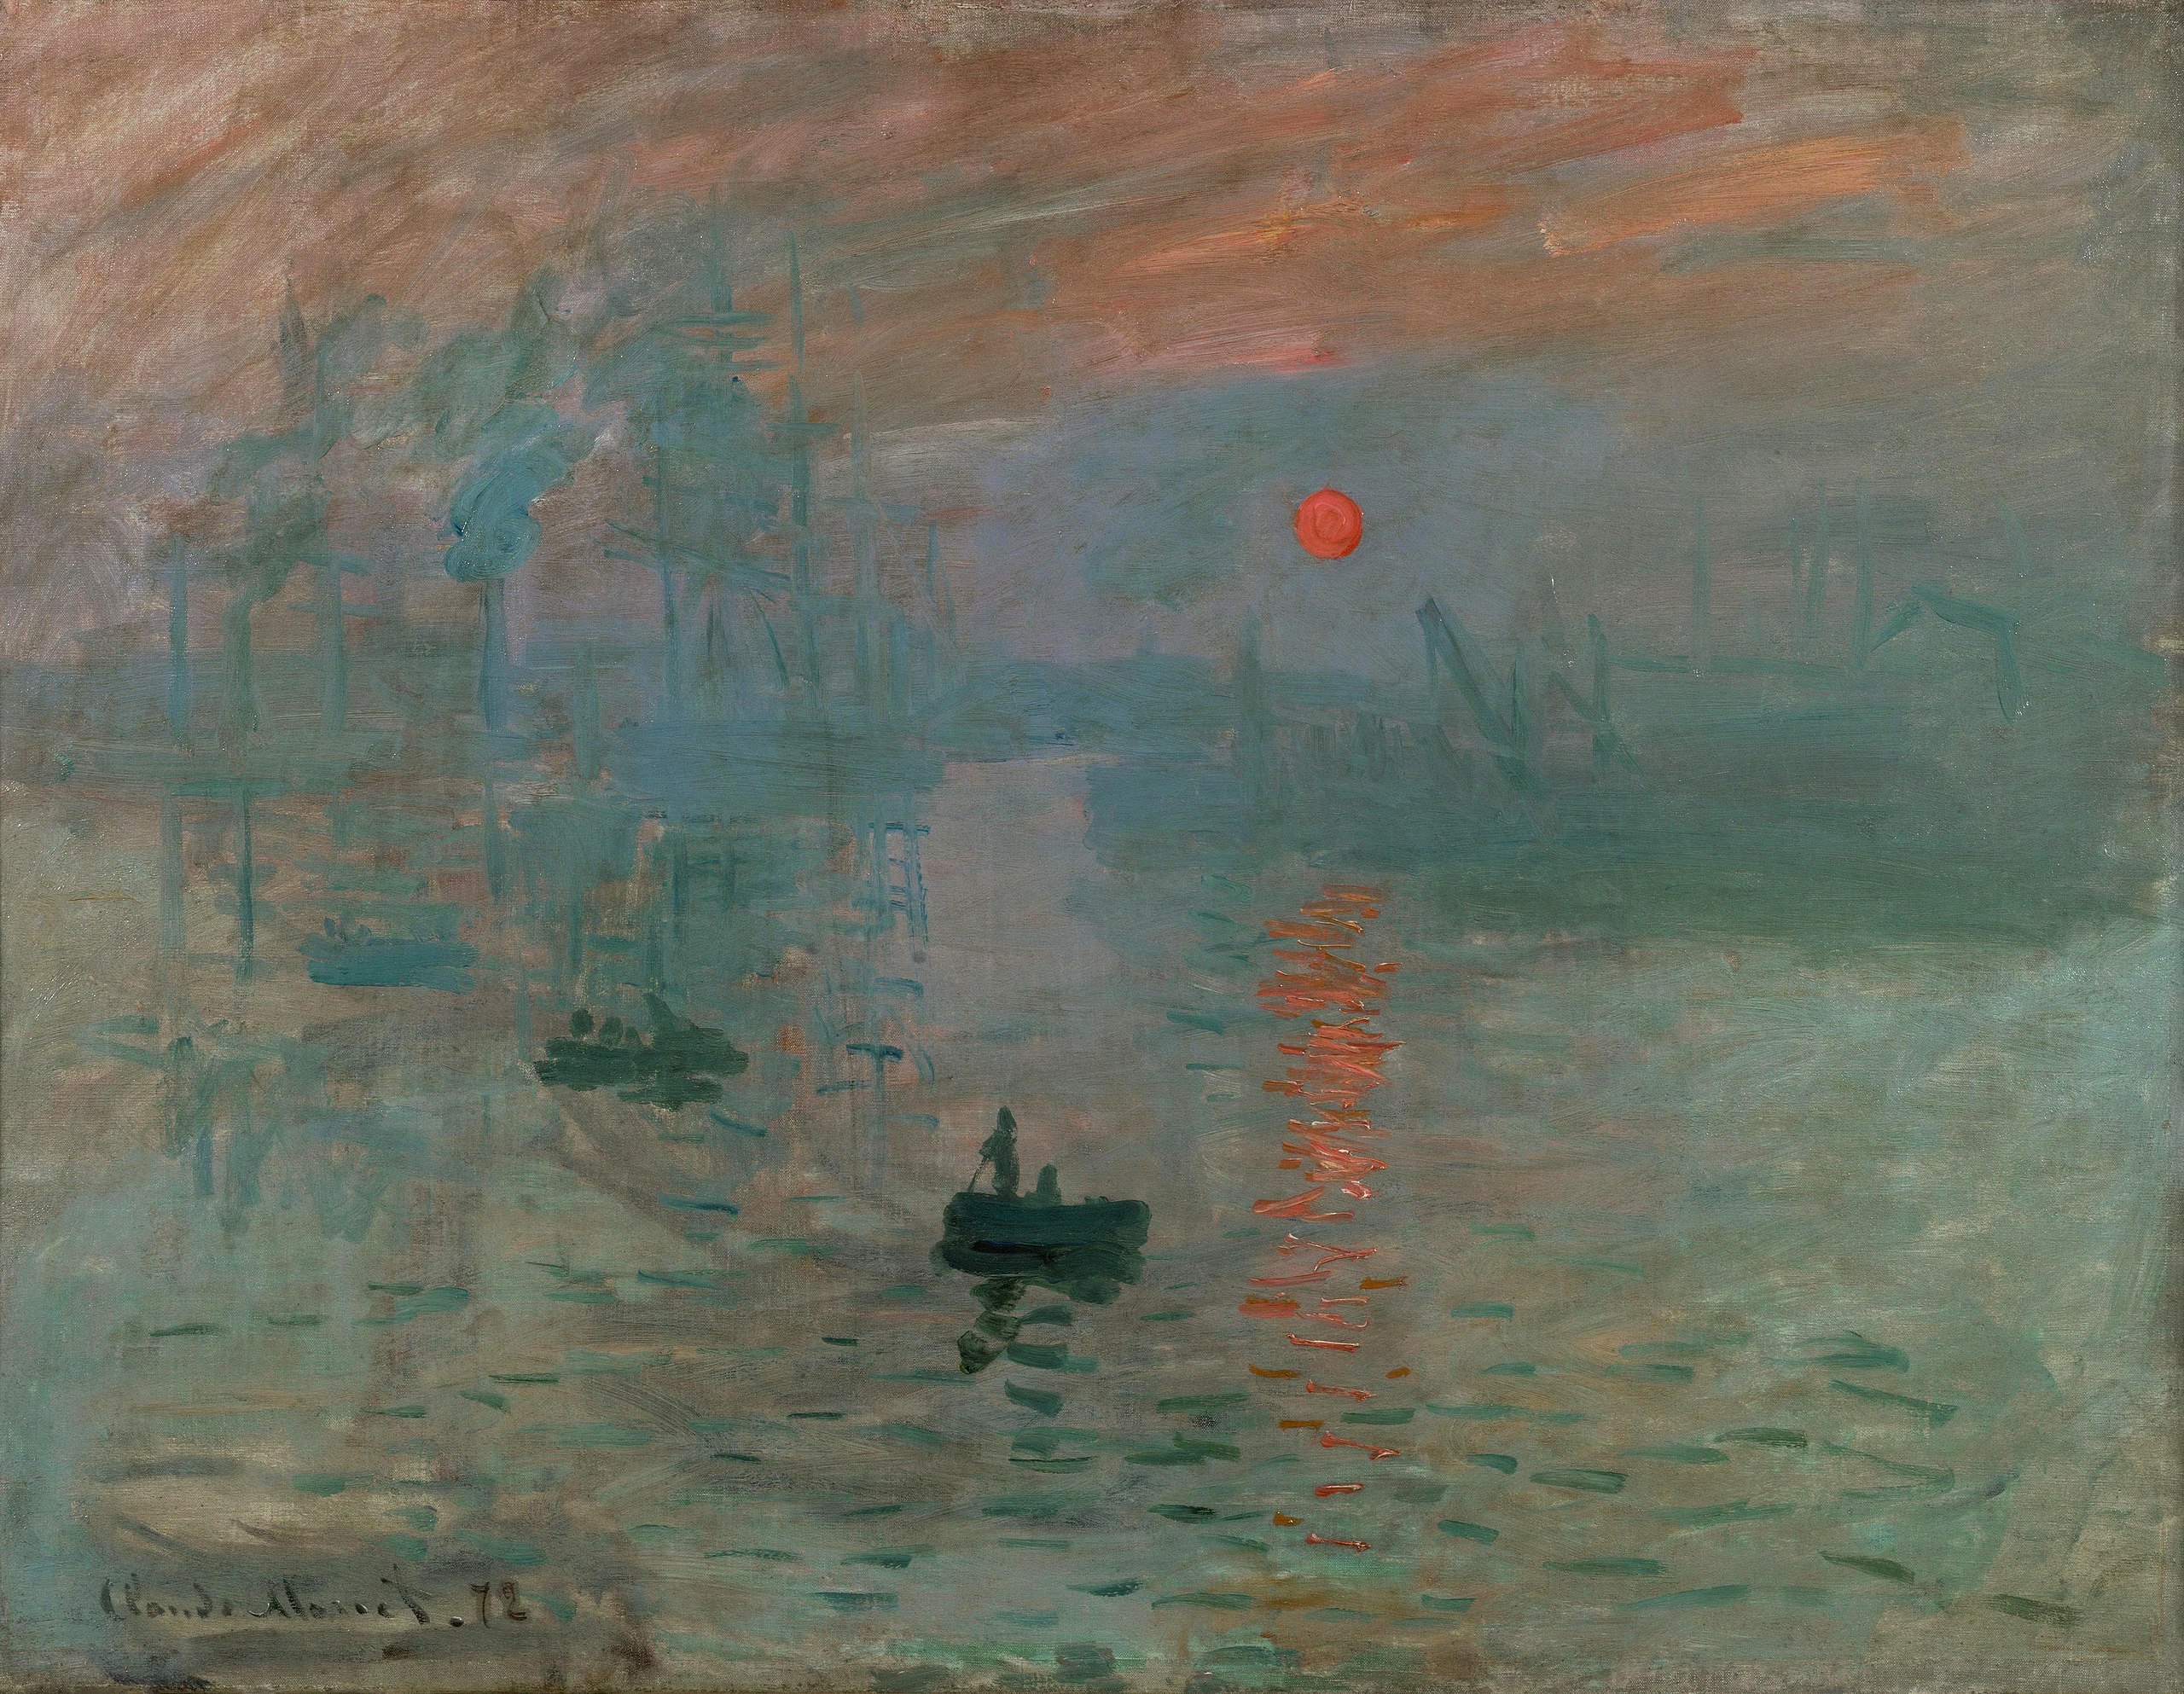 Impression, Sunrise Claude Monet